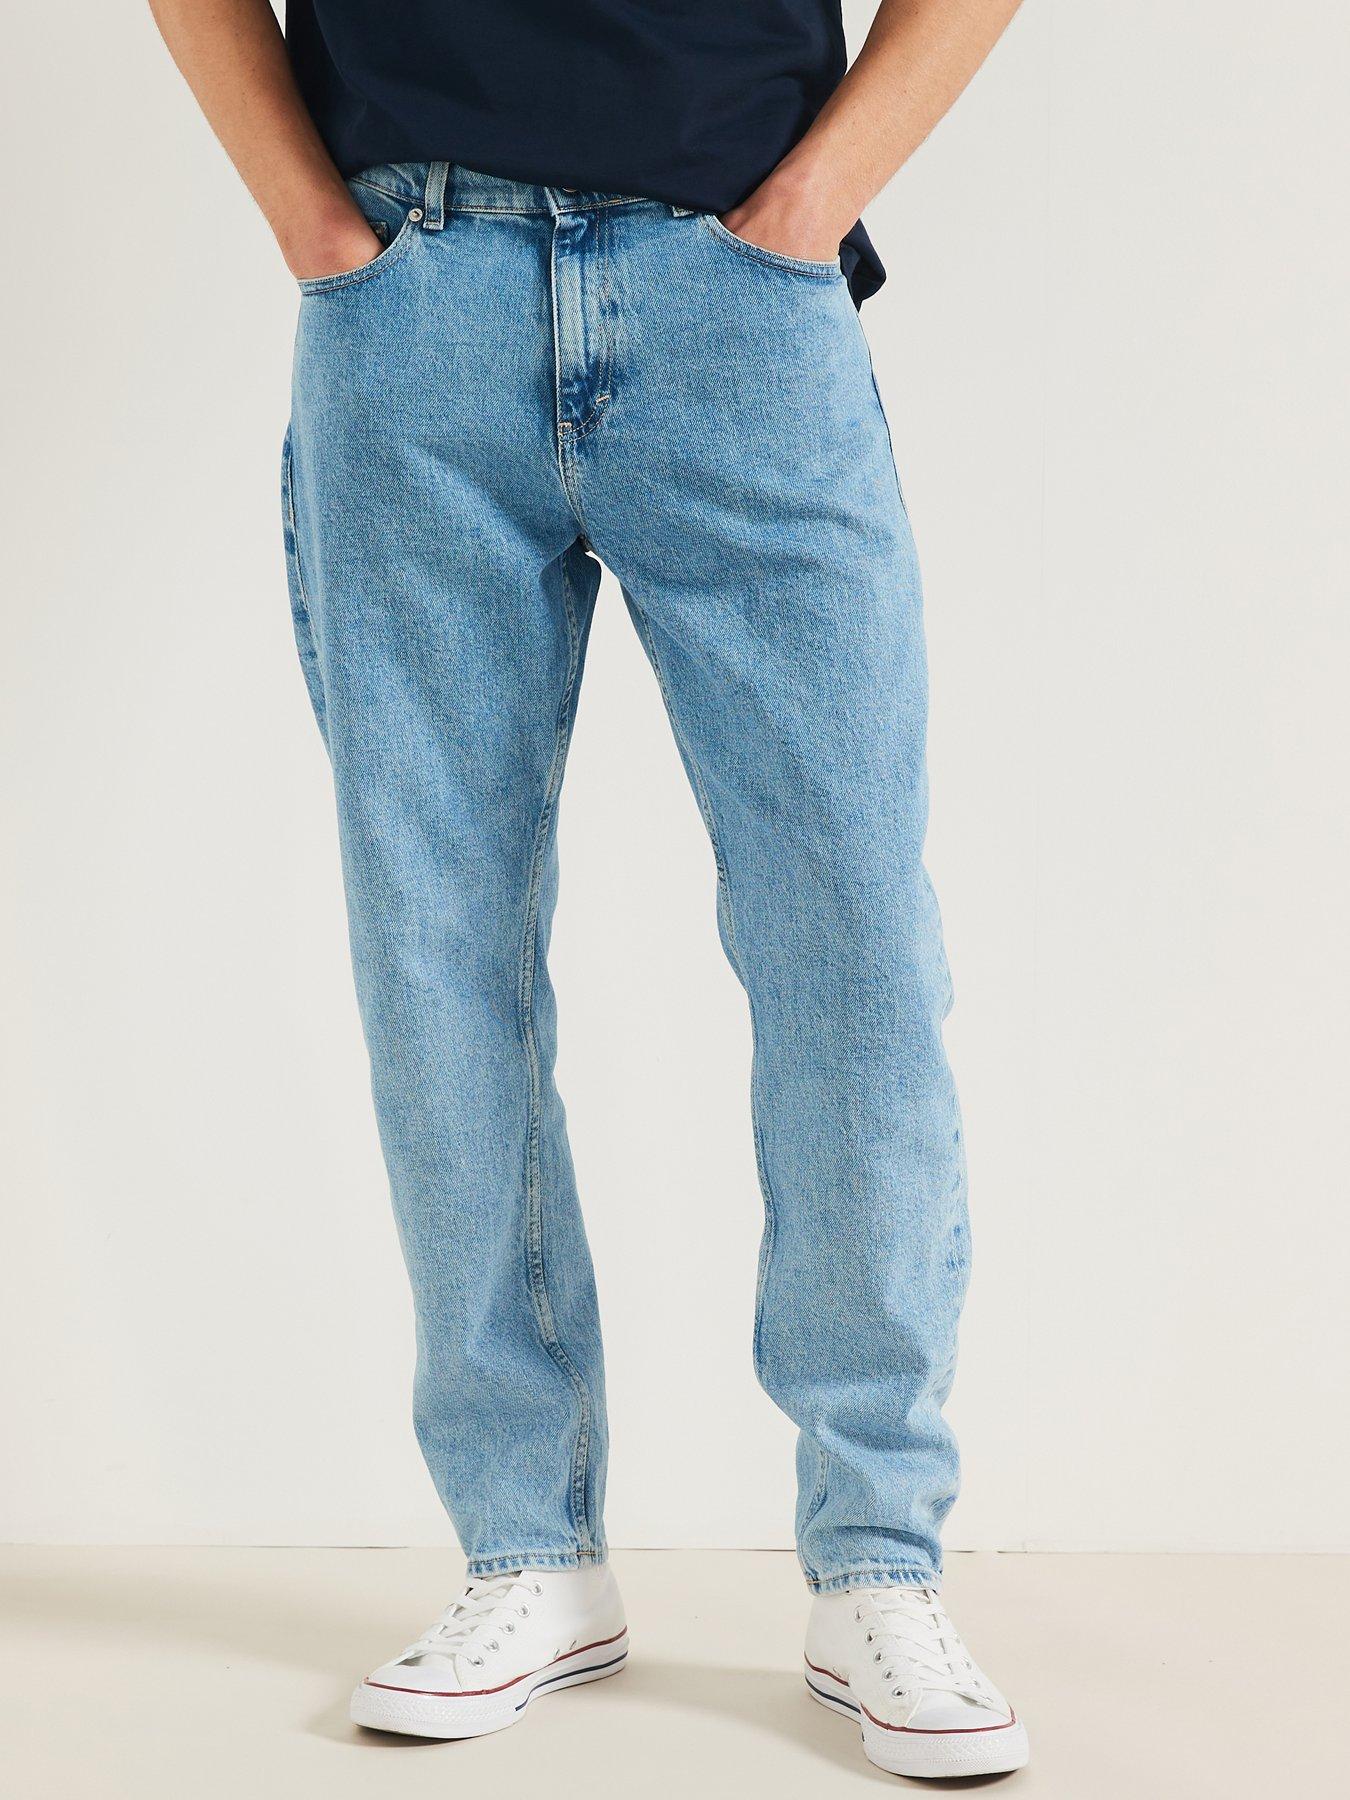 Tommy Hilfiger Slim Fit Bleecker Power Stretch Iowa Jeans - Dark Wash